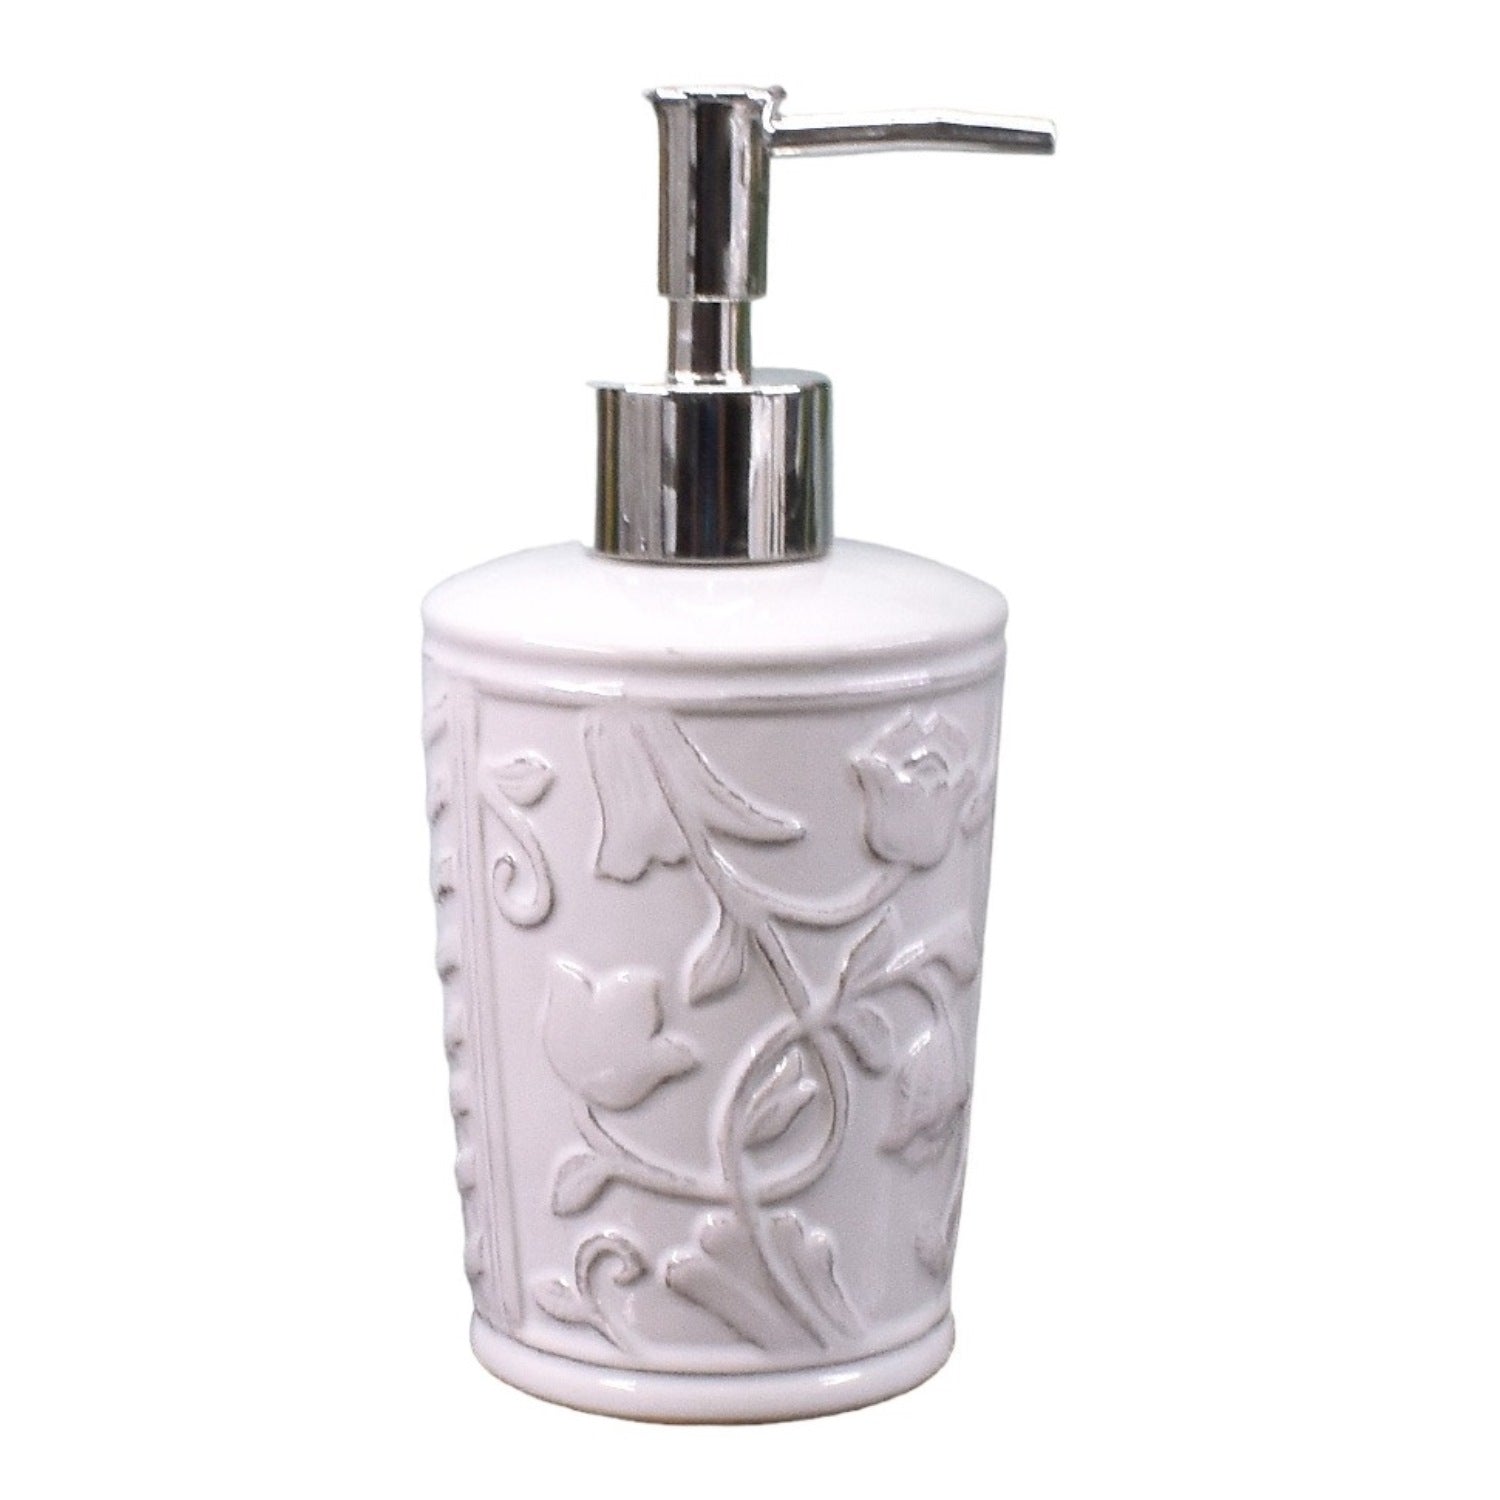 Ceramic Soap Dispenser Set of 1 Bathroom Accessories for Home (C1007)